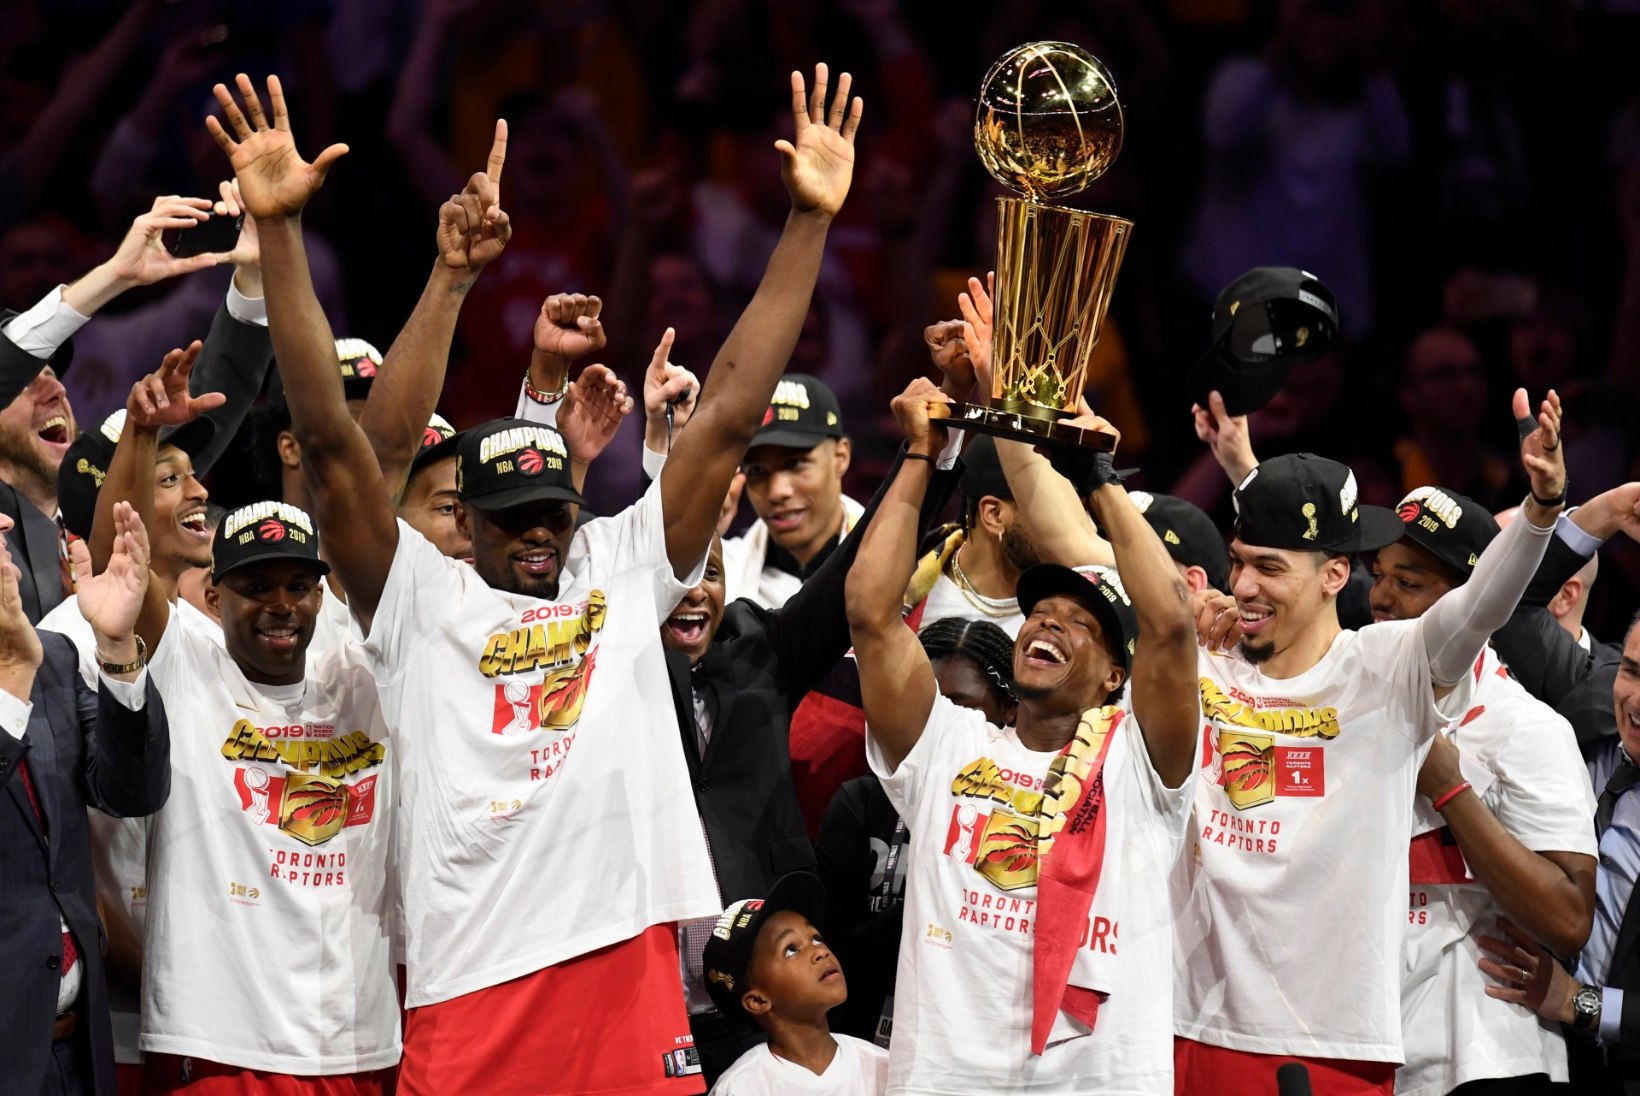 VIDEO | Ajalugu teinud Toronto Raptors krooniti NBA meistriks, Warriors sai veel ühe paugu